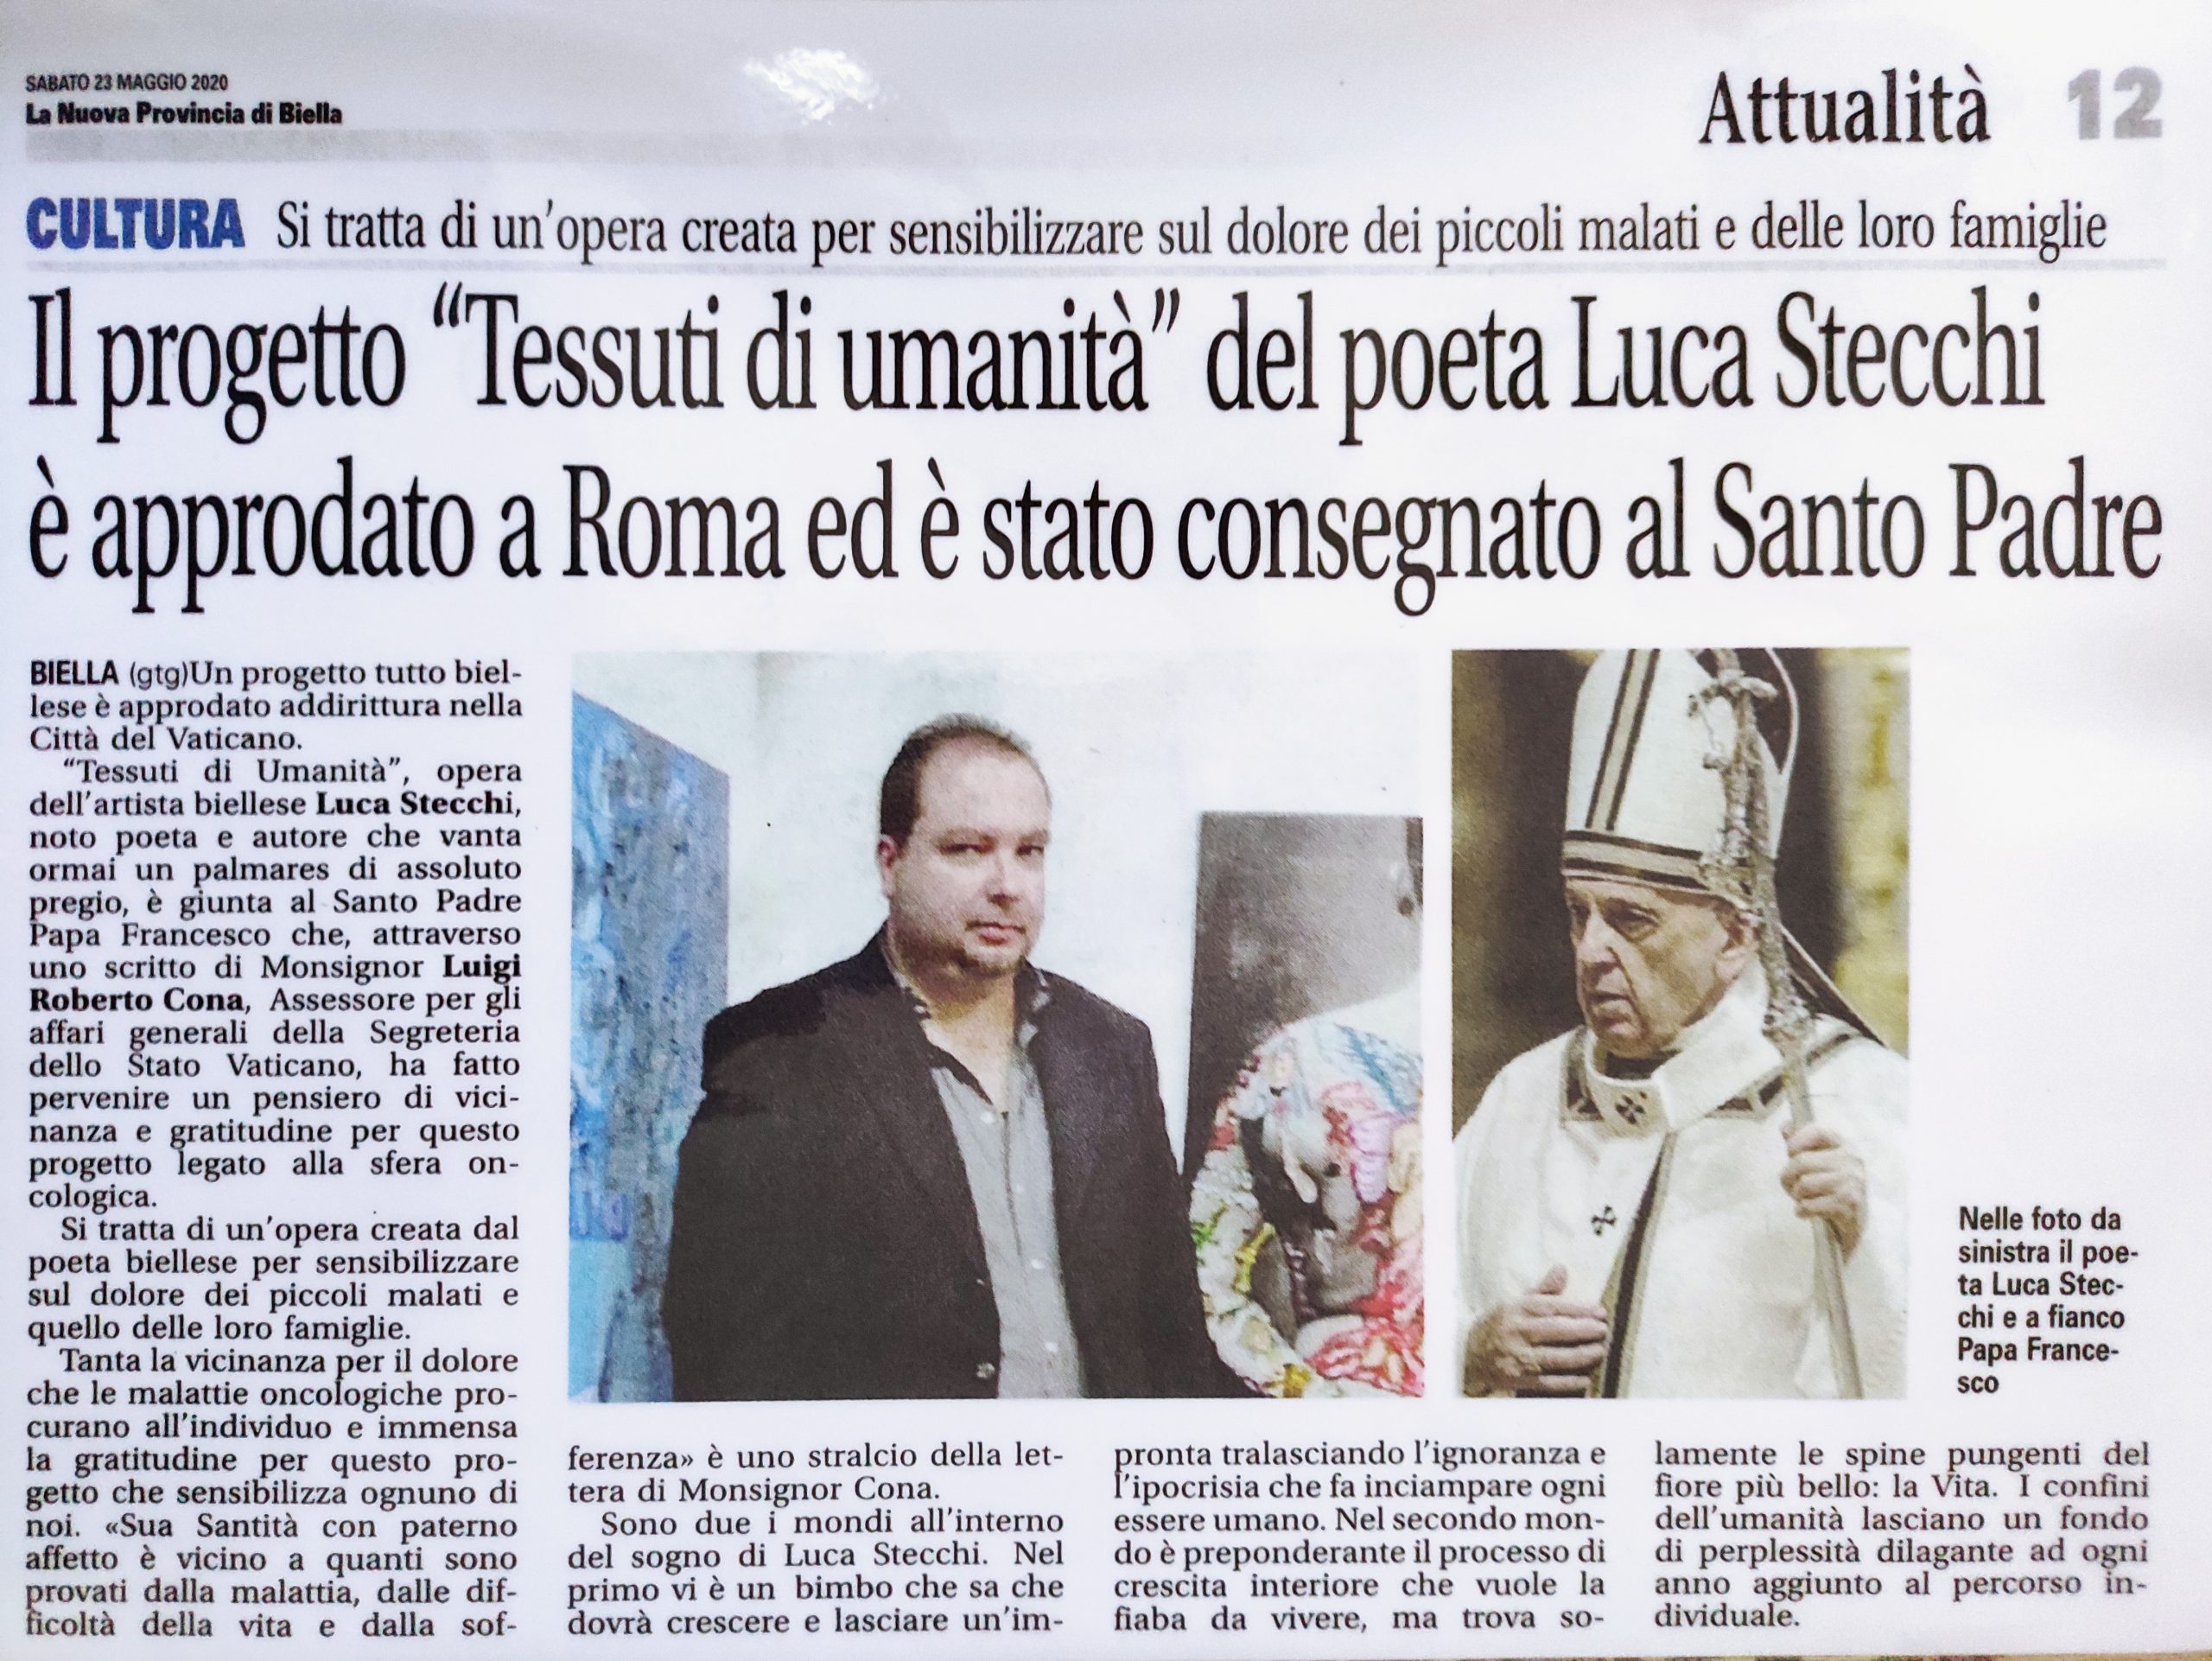 Luca Stecchi e la lettera di Papa Francesco